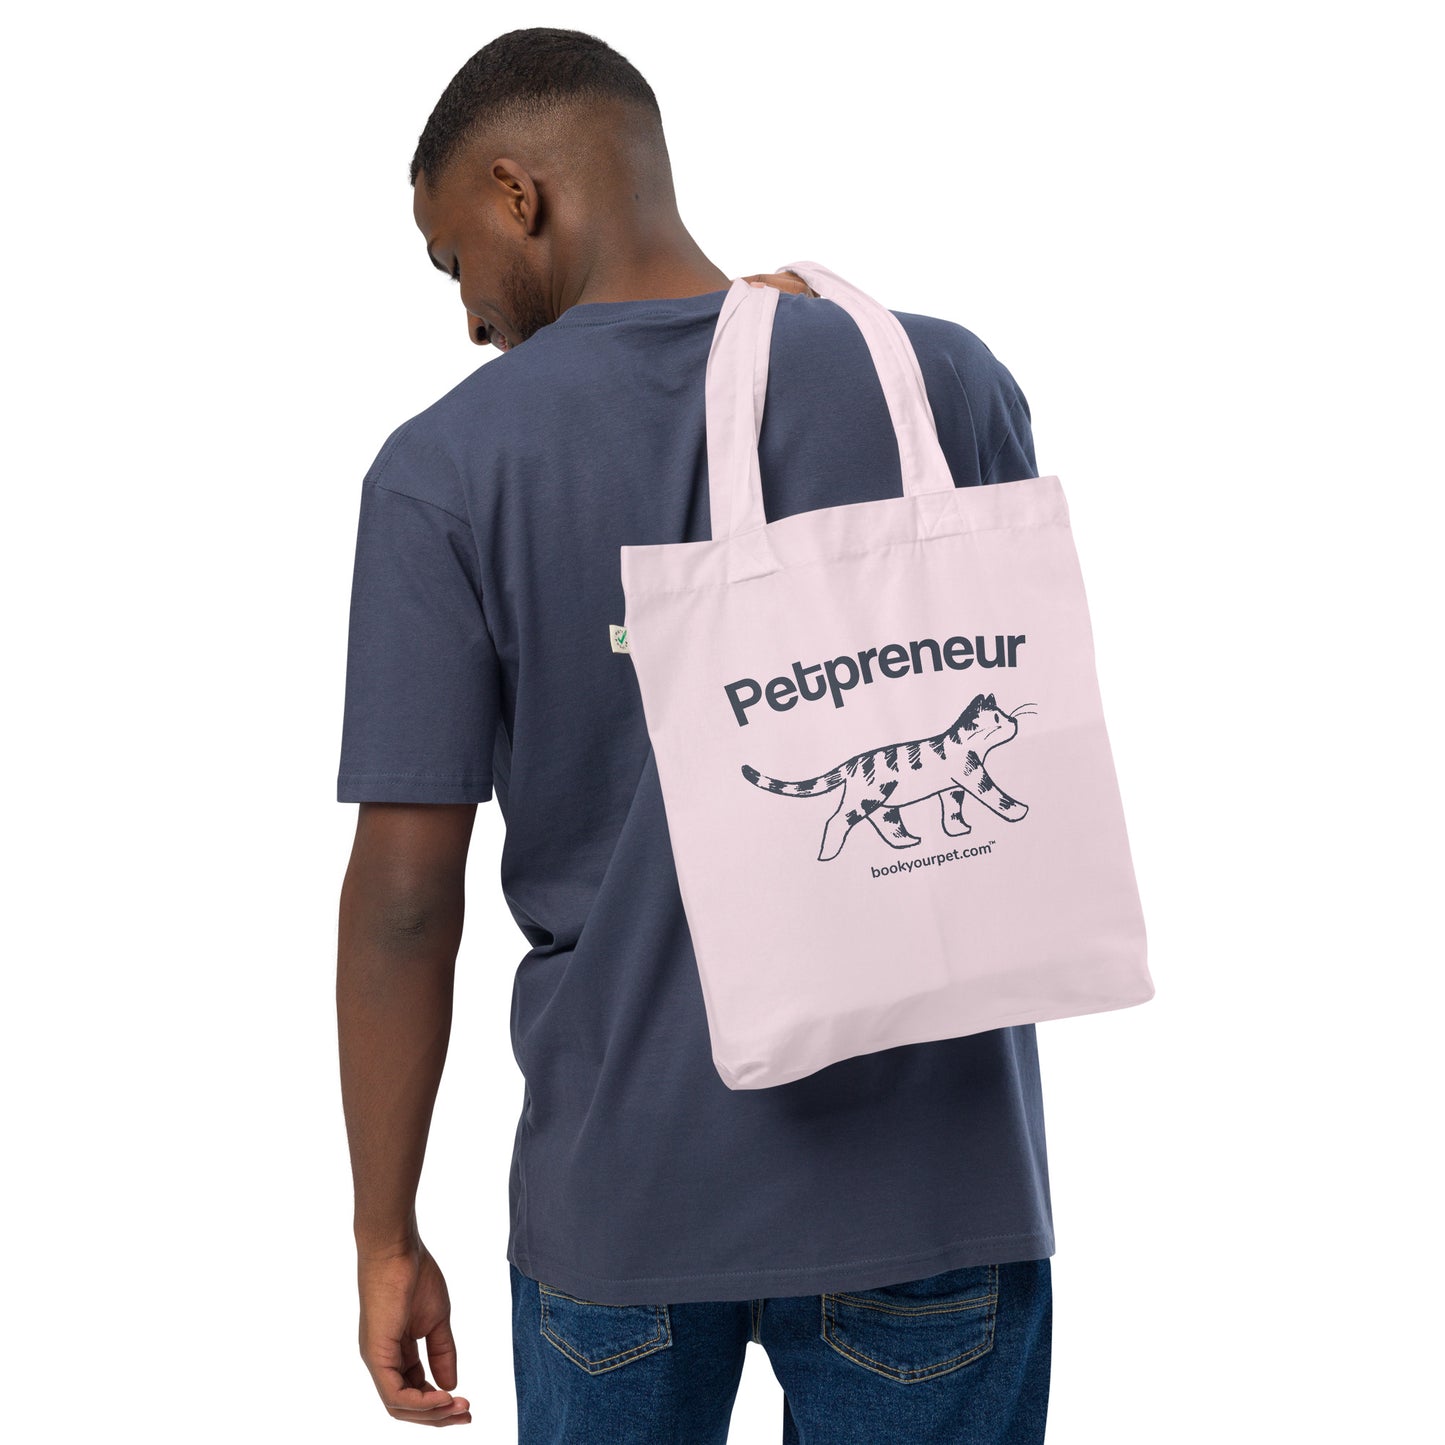 Cat PetPreneur Tote Bag